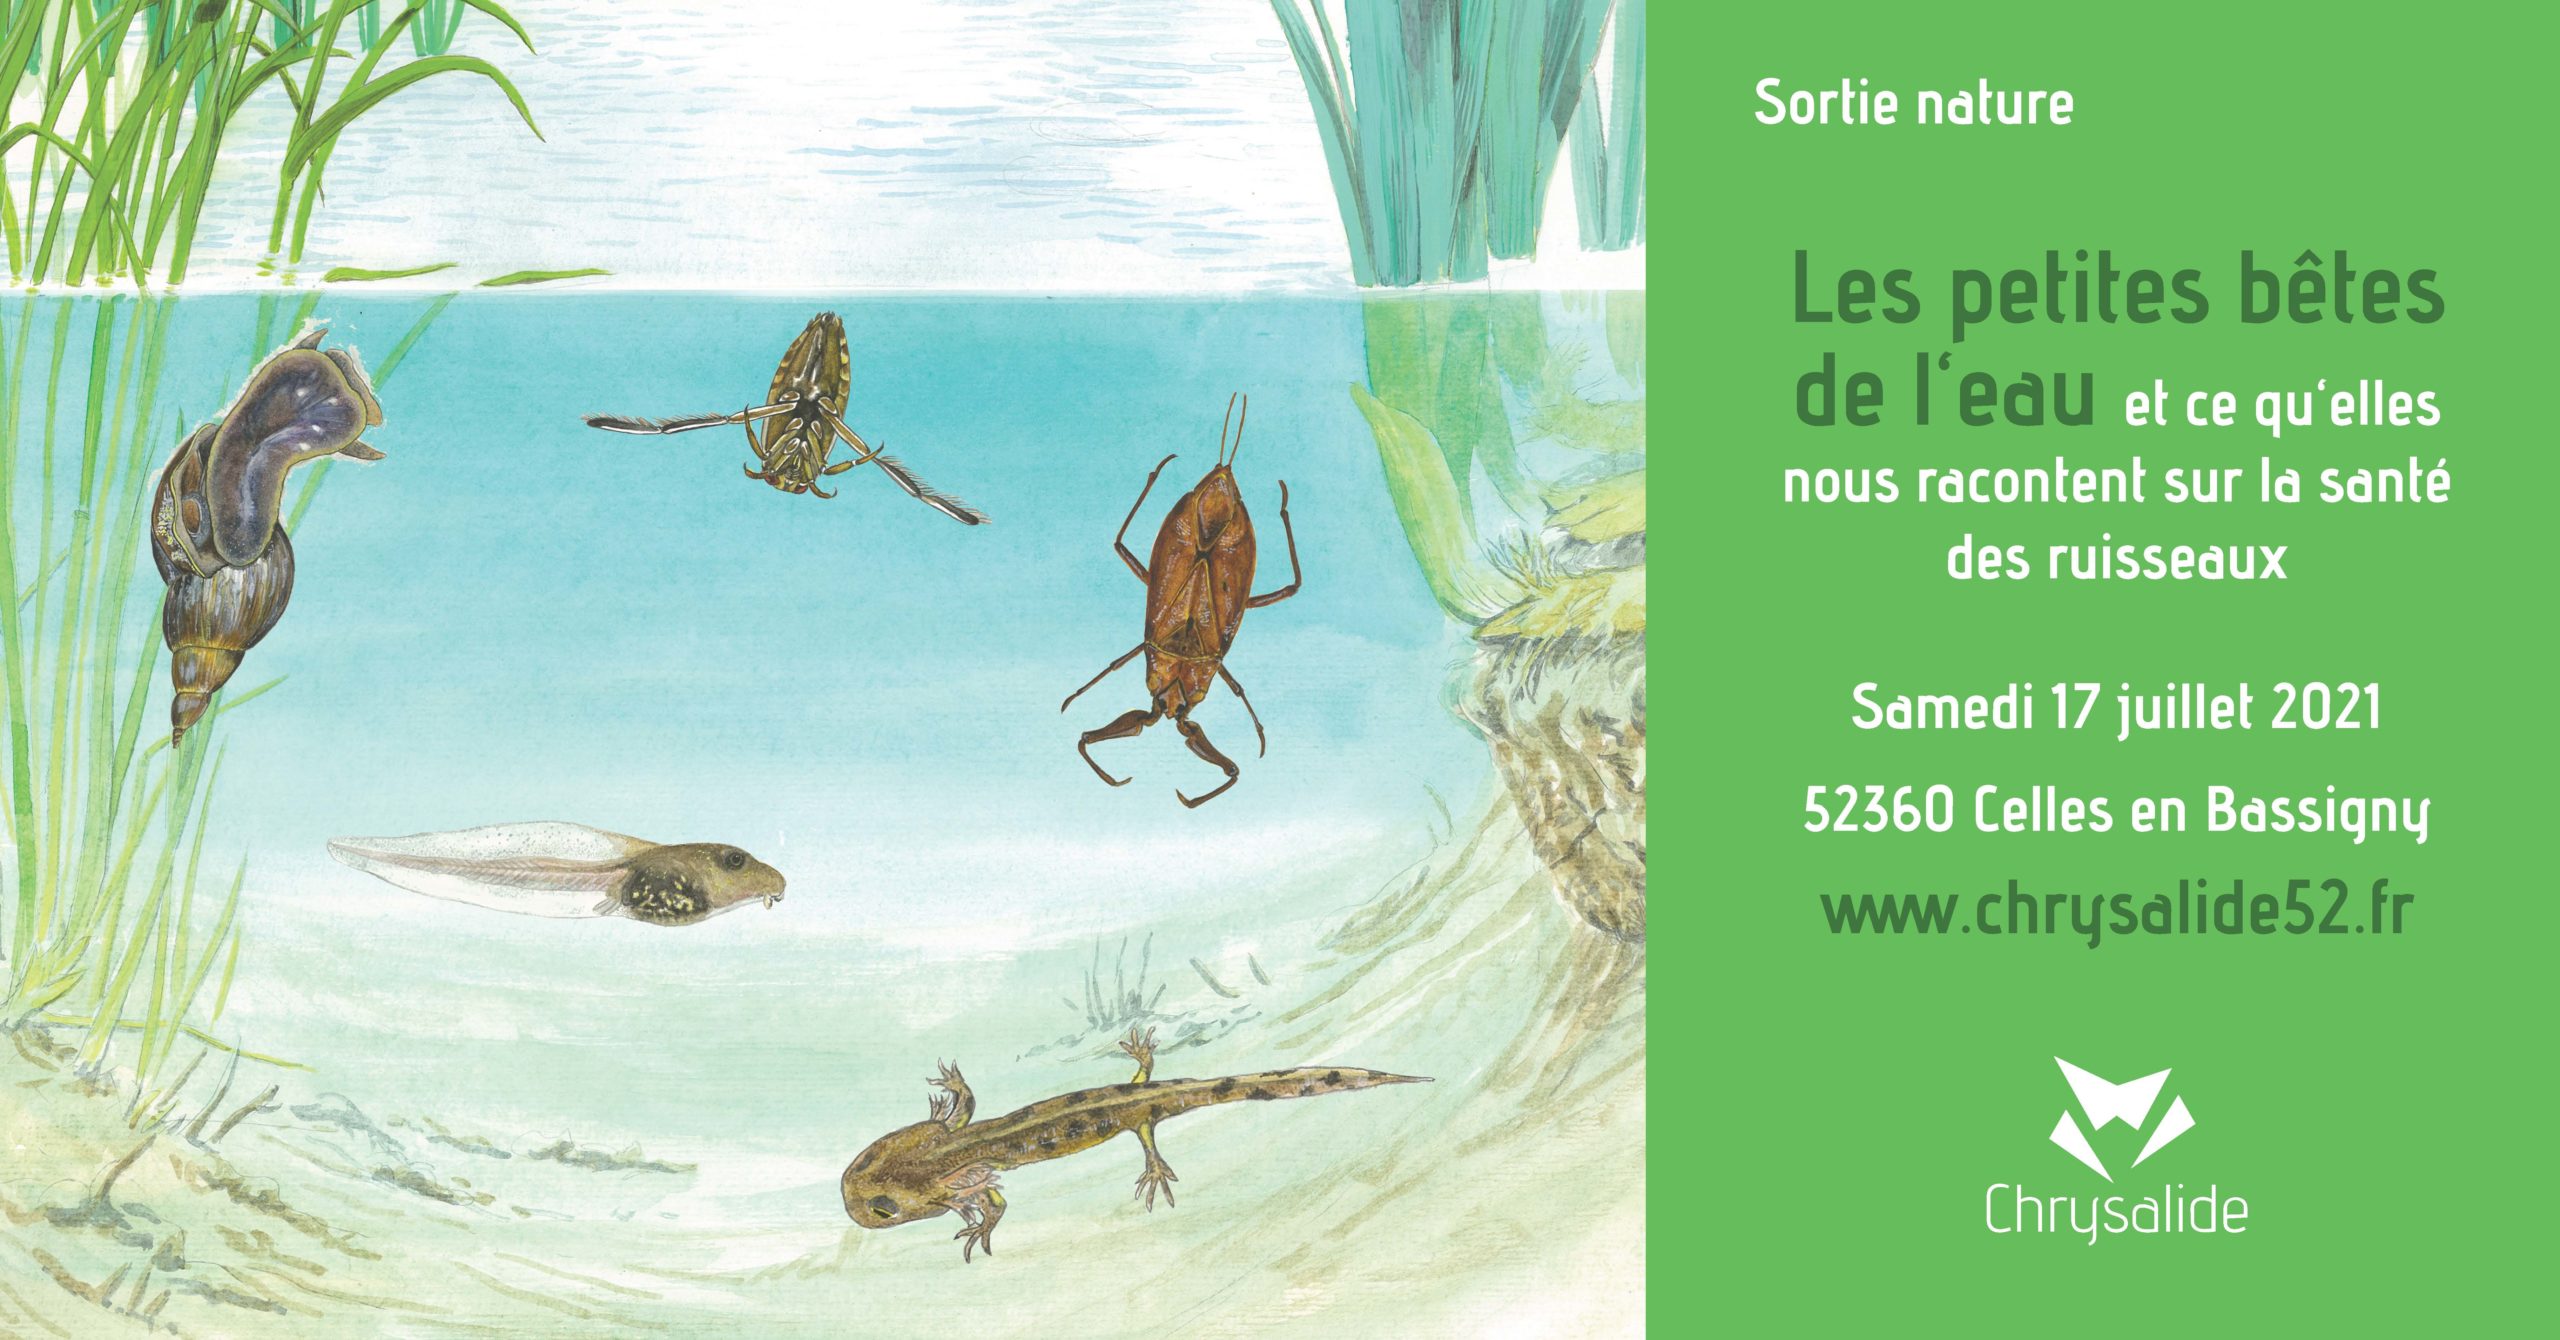 Sortie nature - Les petites bêtes de l'eau et ce qu'elles nous racontent sur la santé des ruisseaux- Chrysalide52 - Michael Geber - Haute-Marne